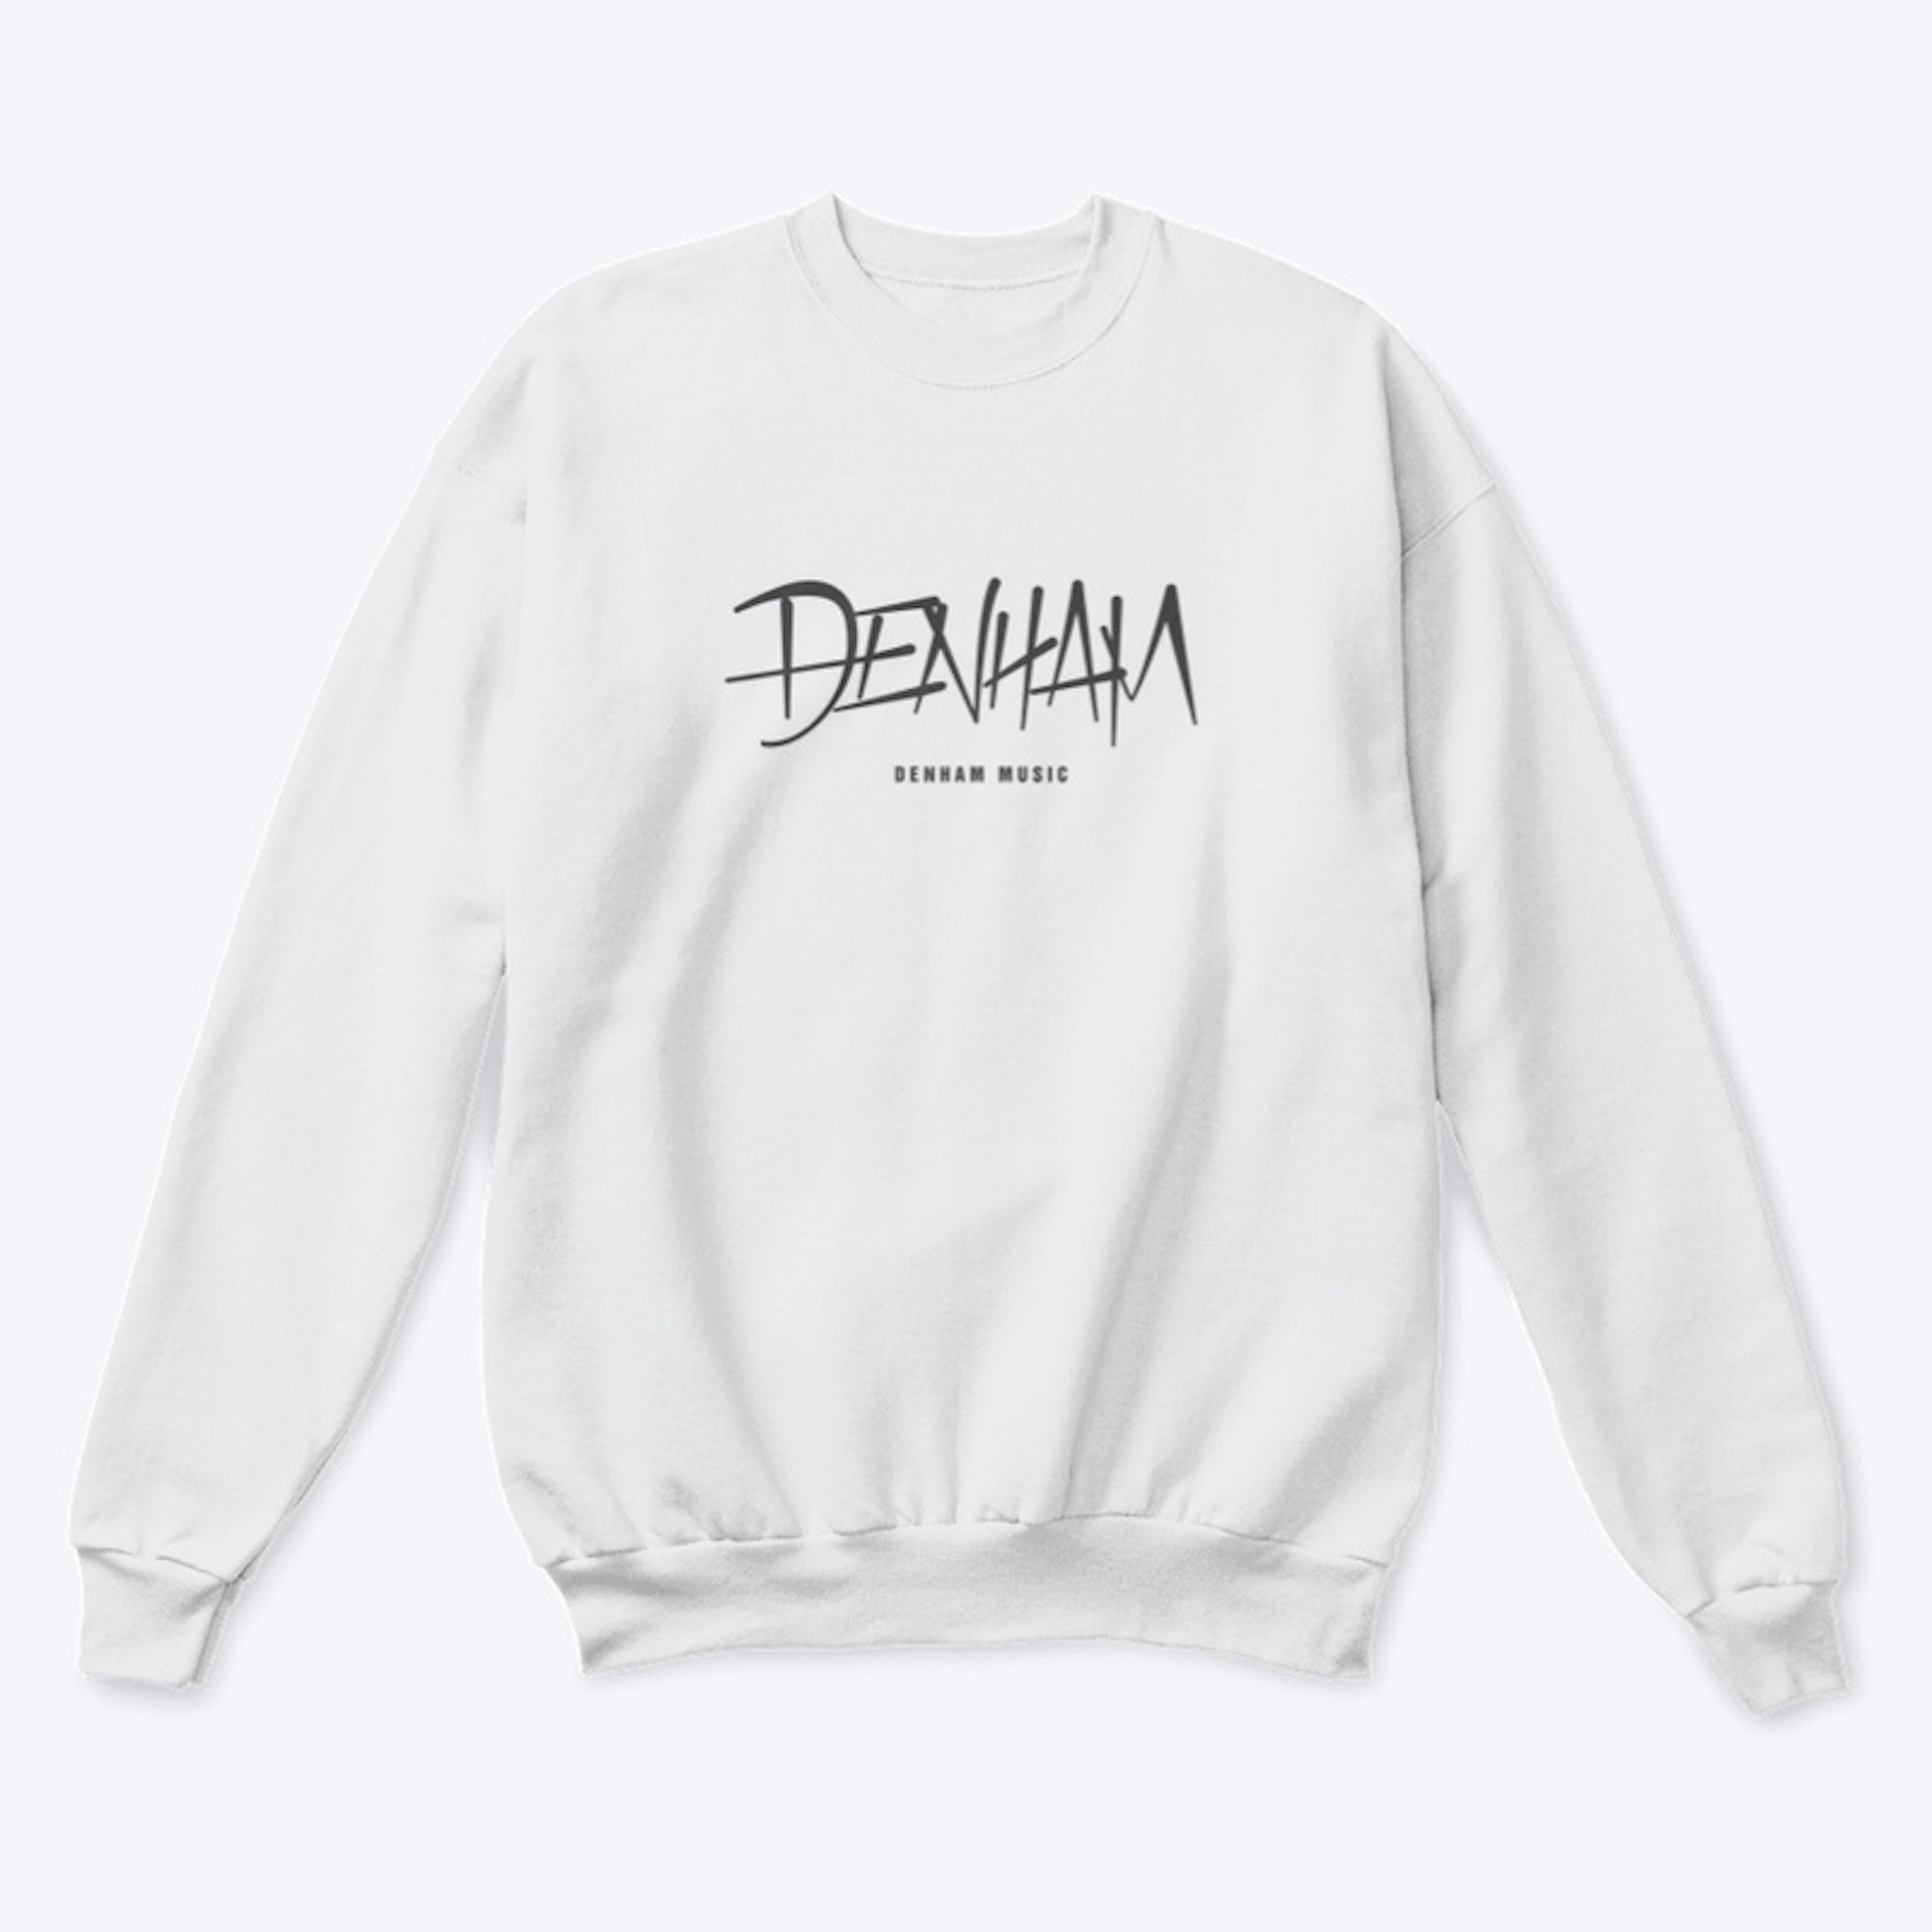 Denham Logowear